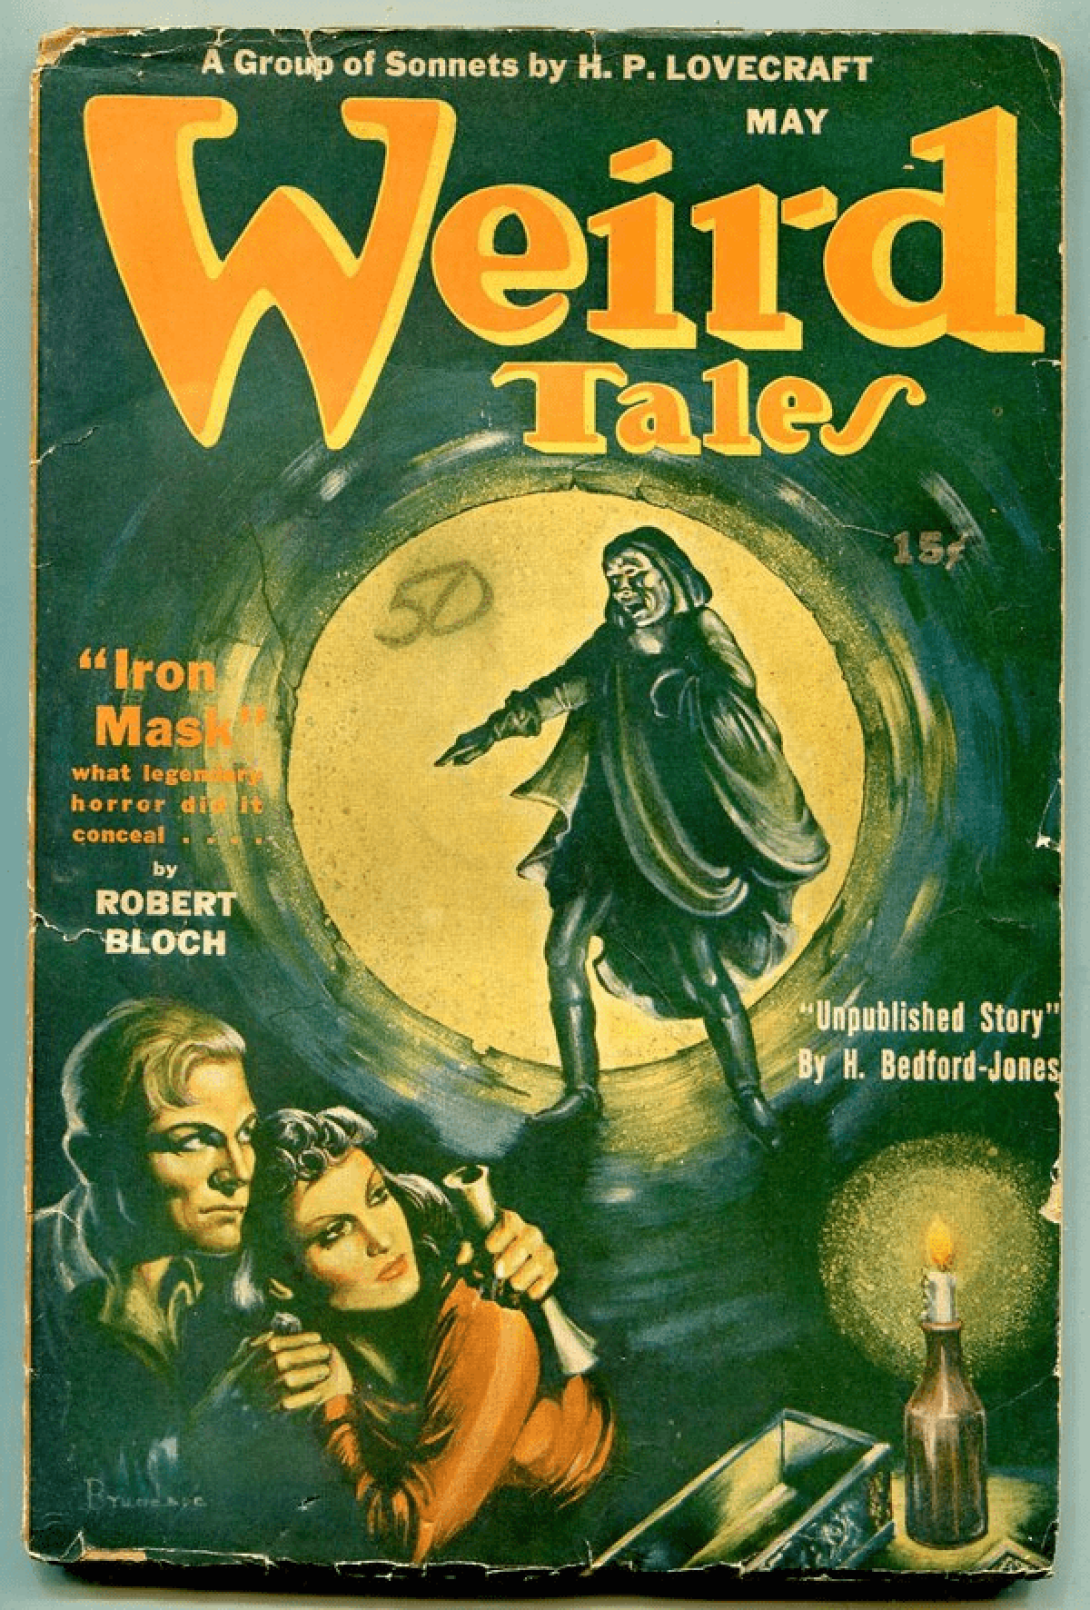 Lovecraf en la portada de la revista Weird Tales.